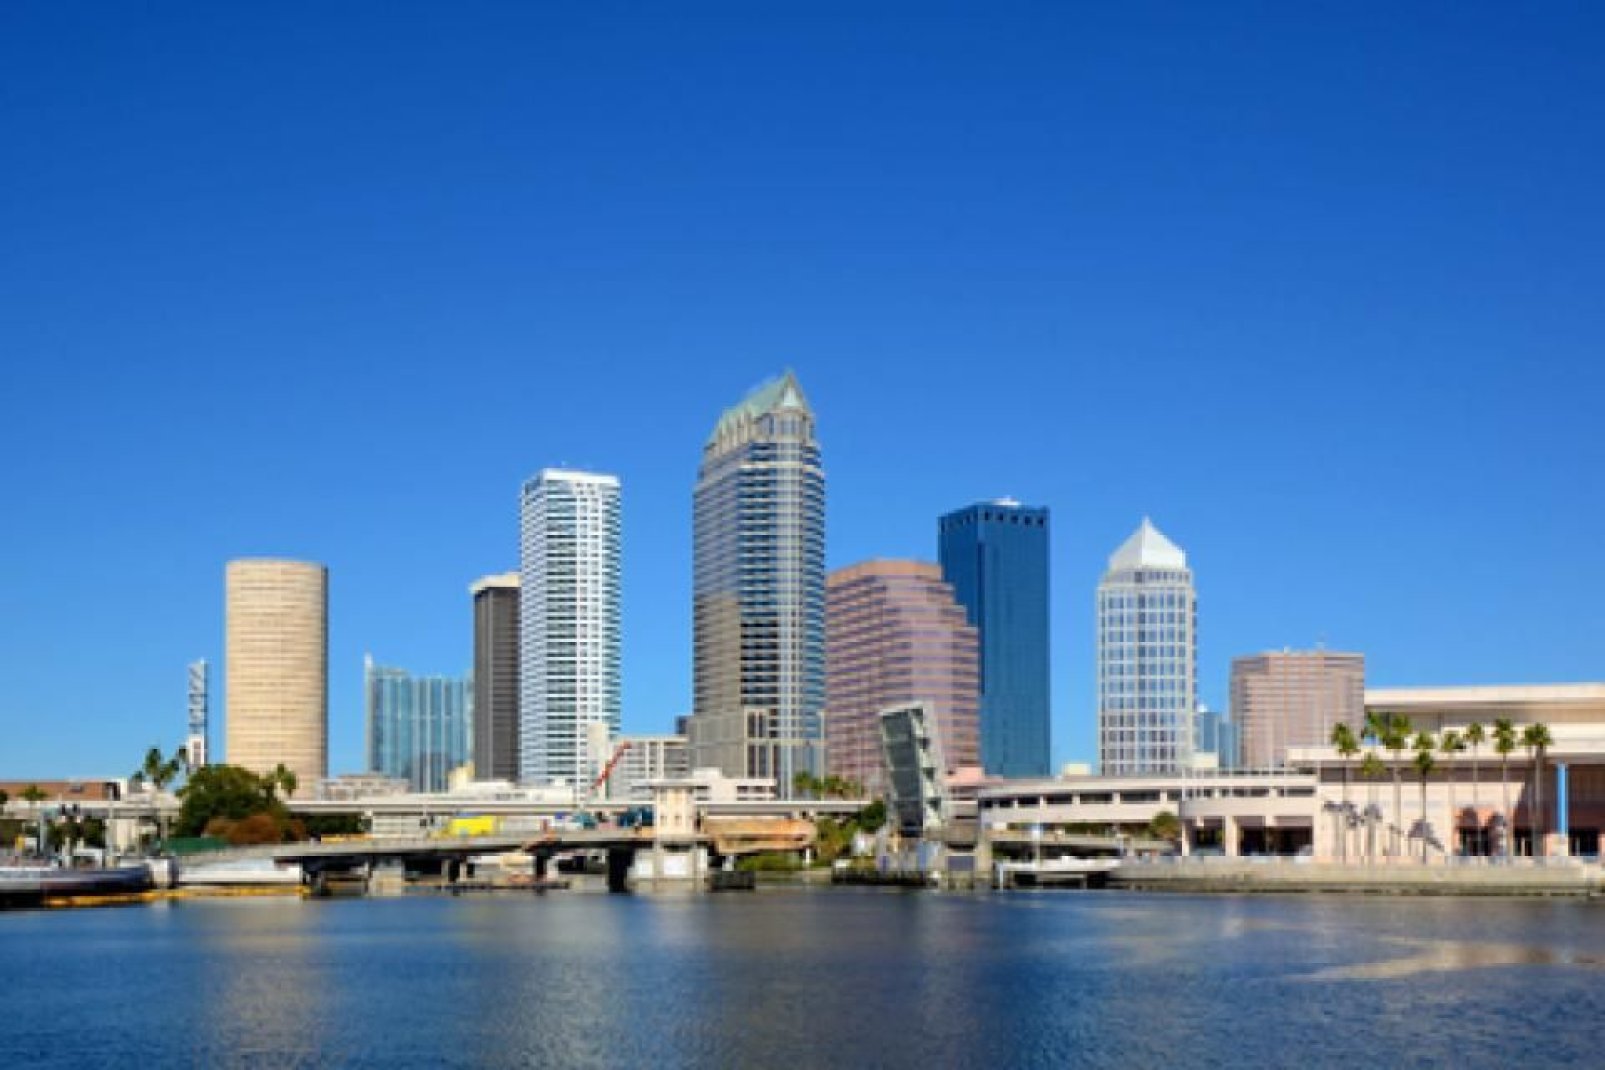 El puerto de Tampa desde una visión aérea y sus embarcaciones de tamaño norteamericano.